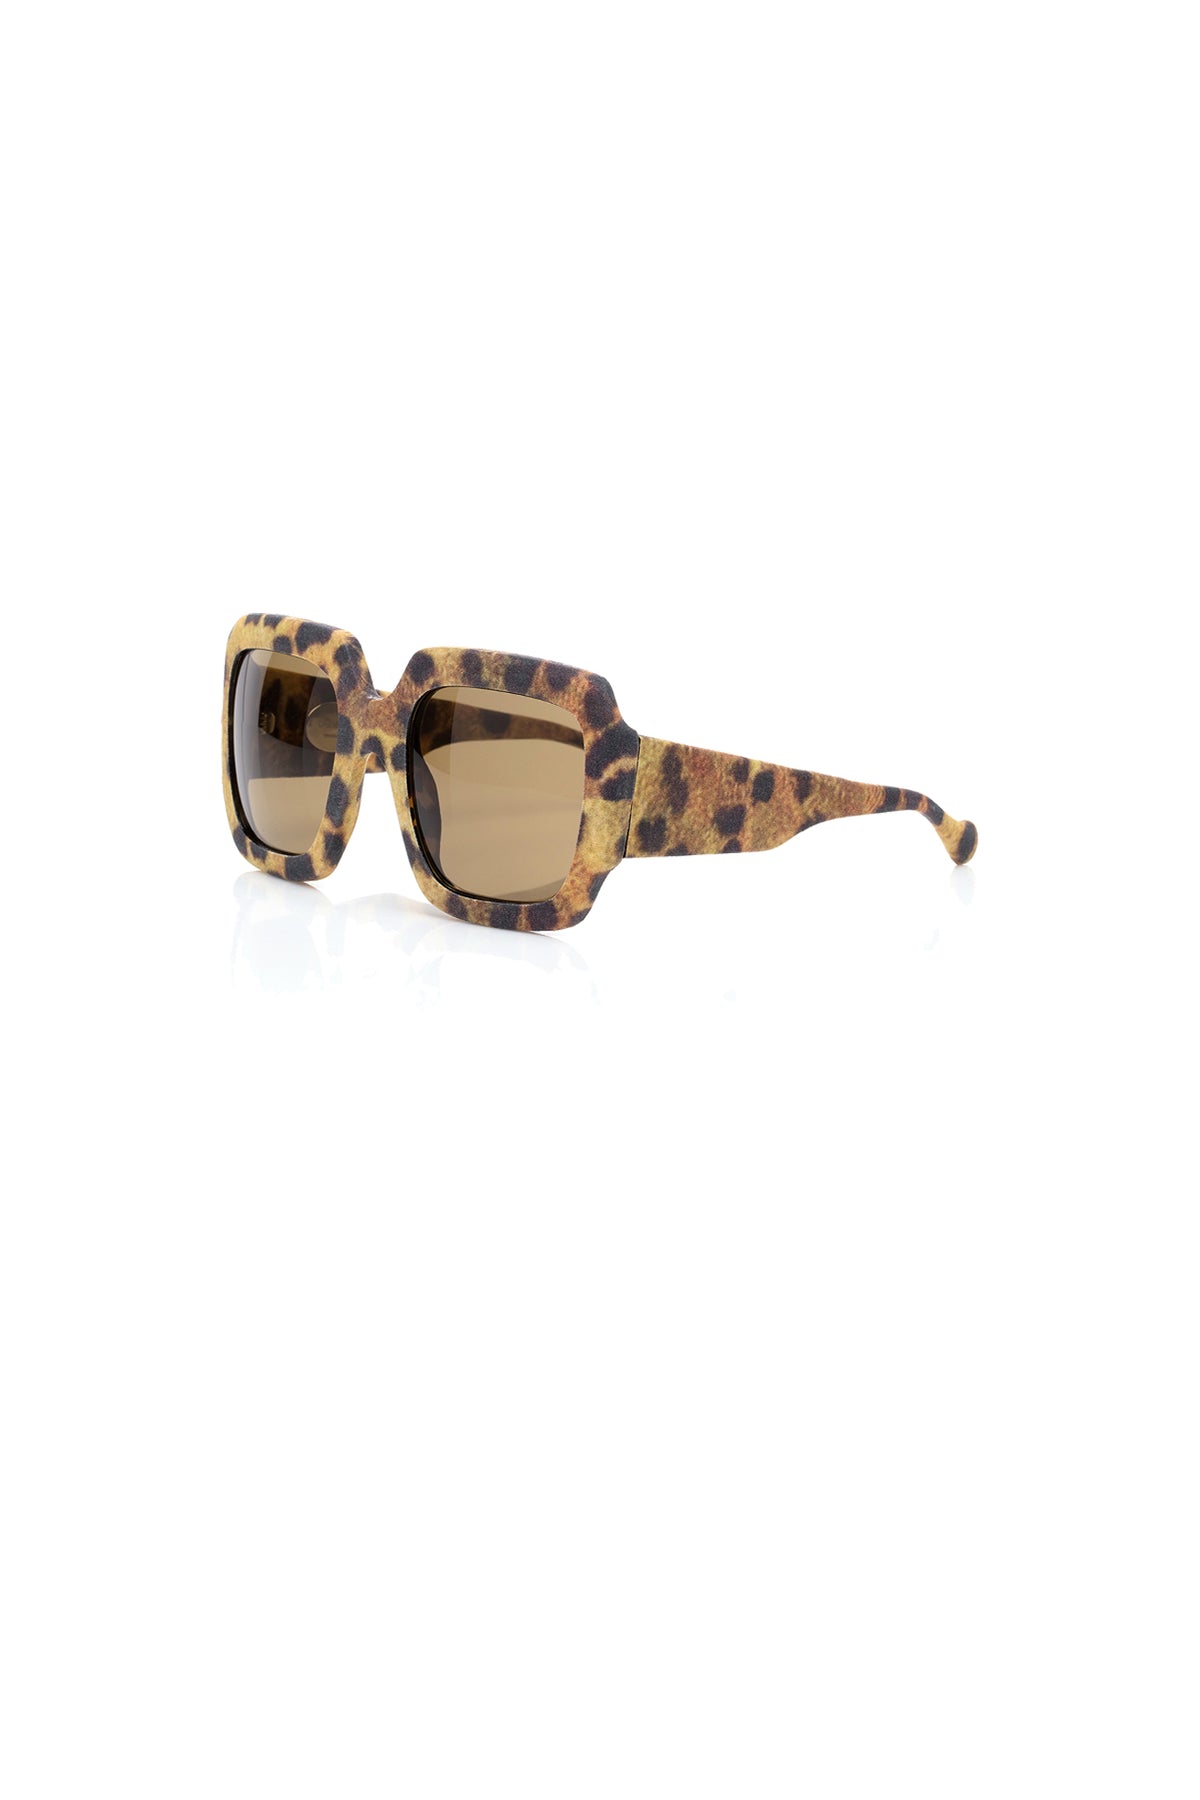 Louis Vuitton- Sunglasses - S-253 